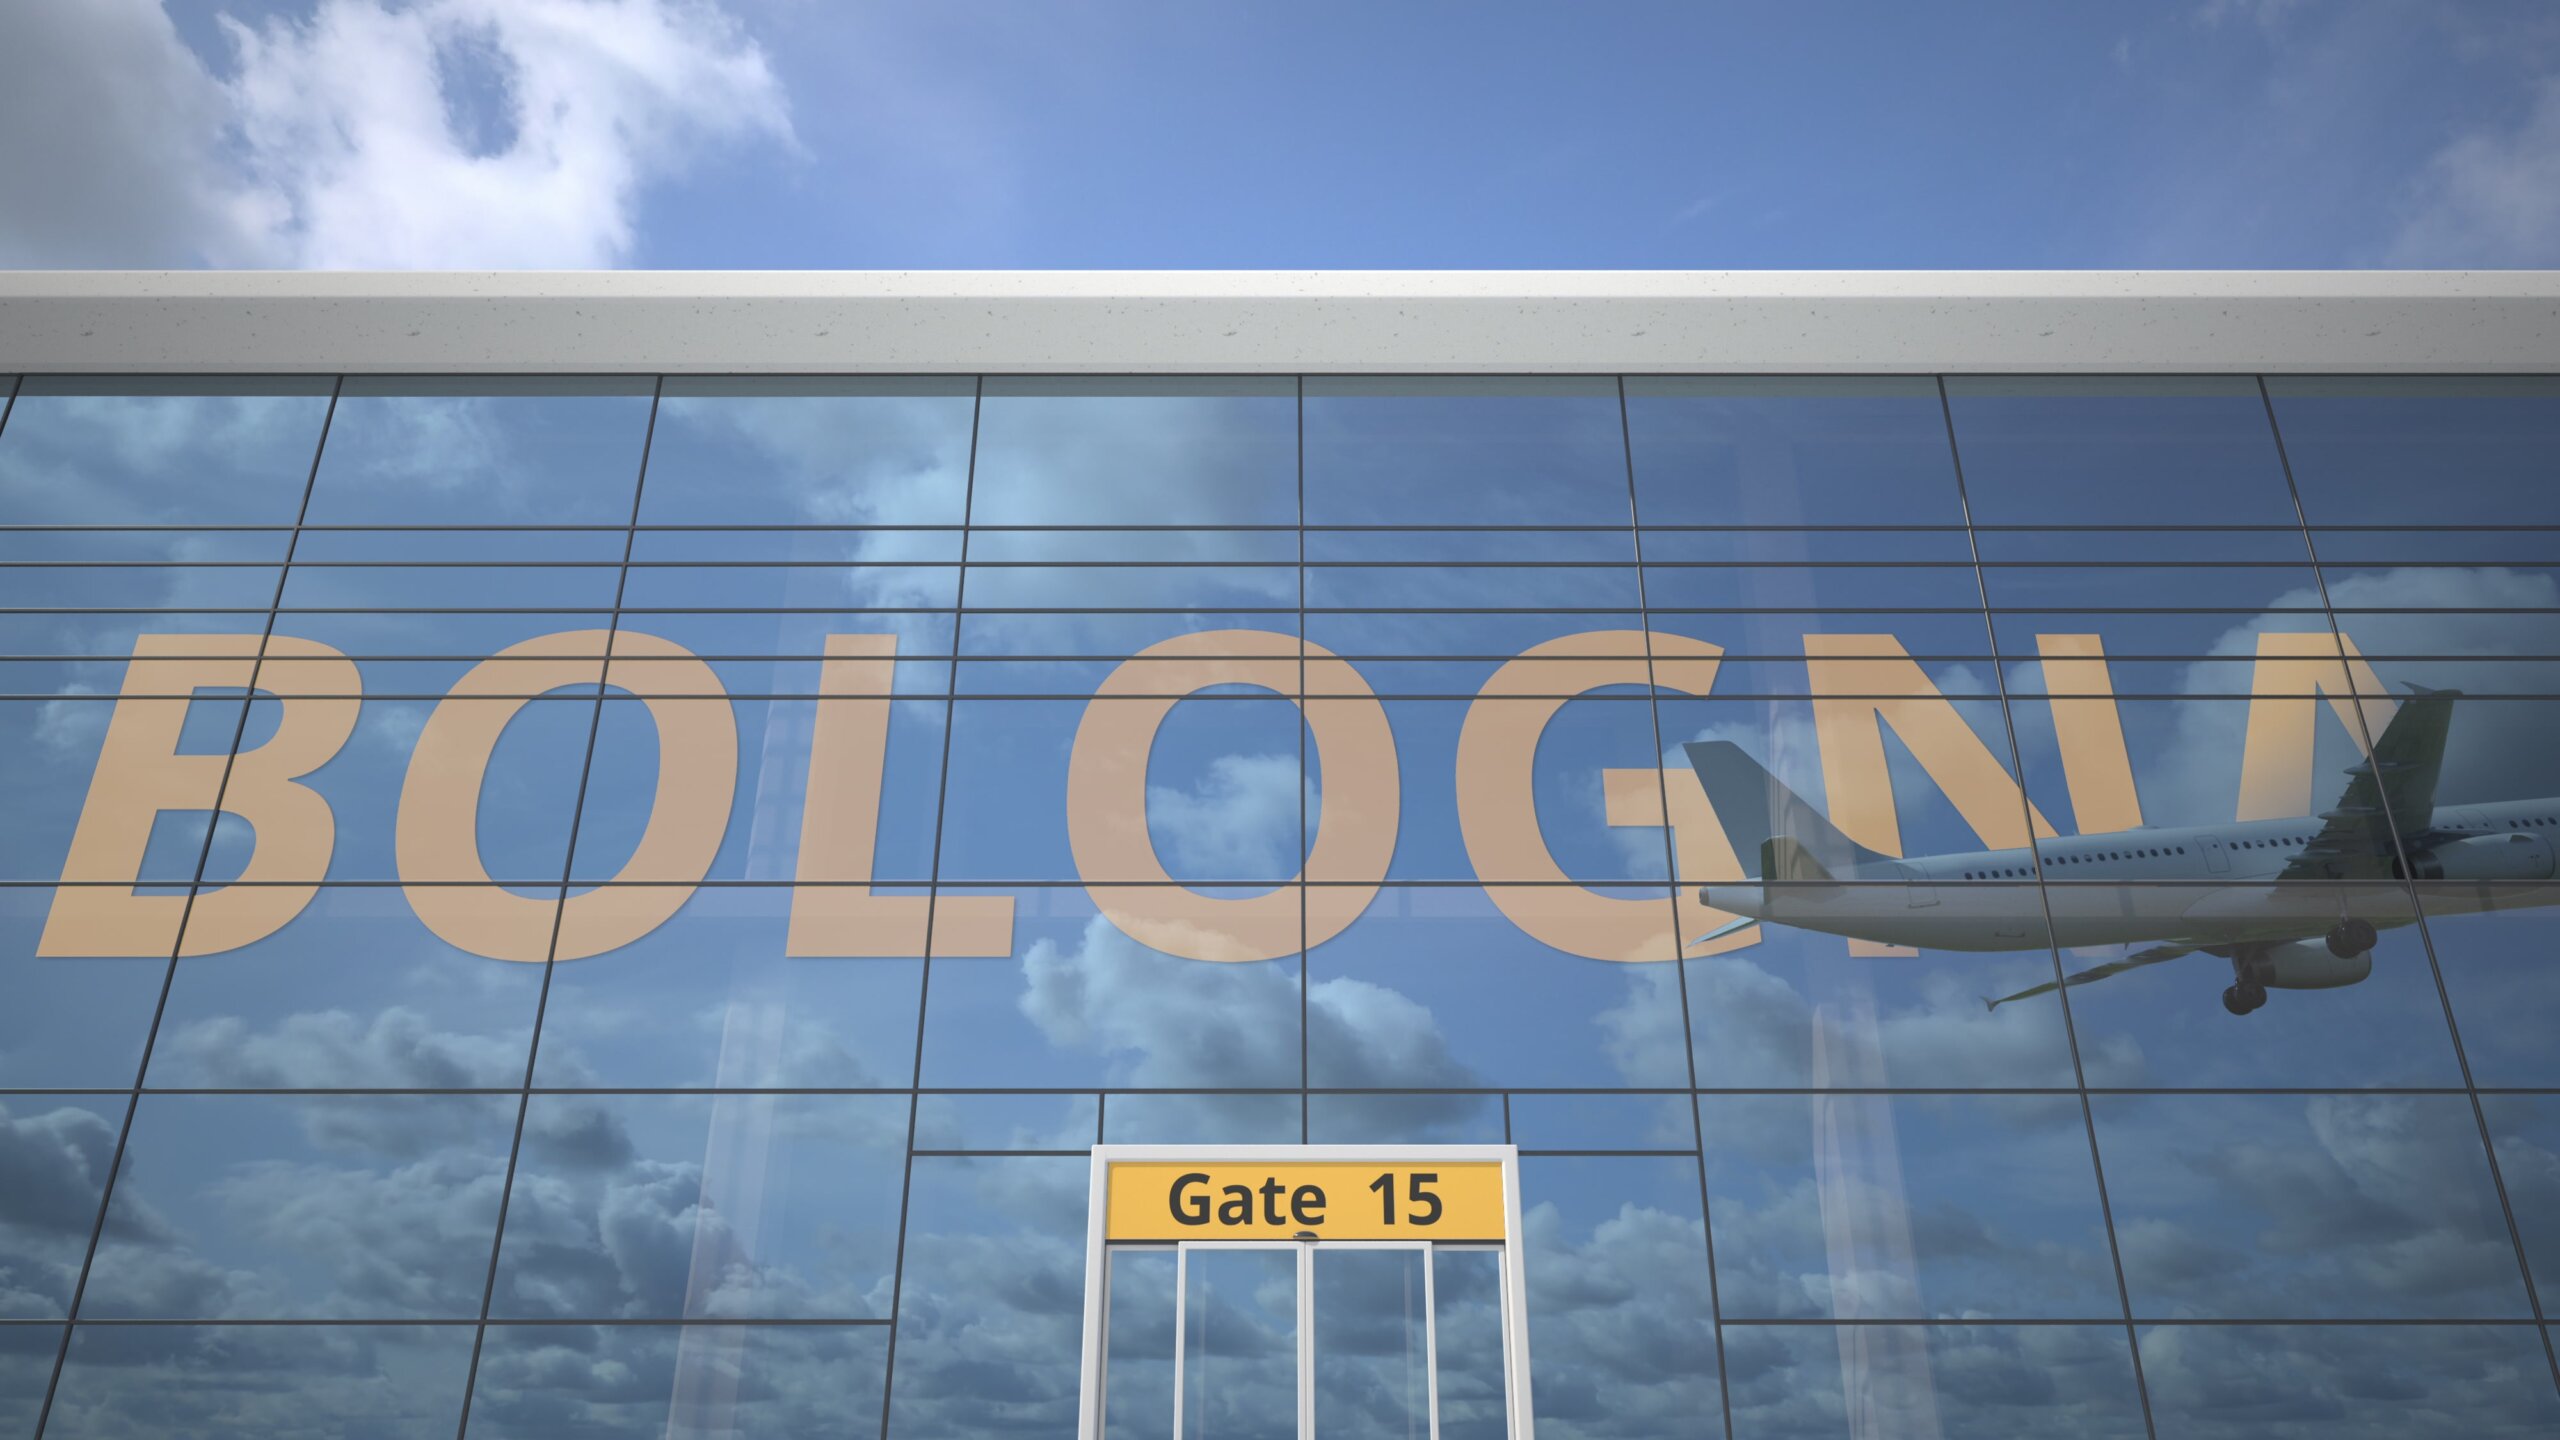 Samolot odbija się w terminalu lotniska z nazwą miasta Boloni